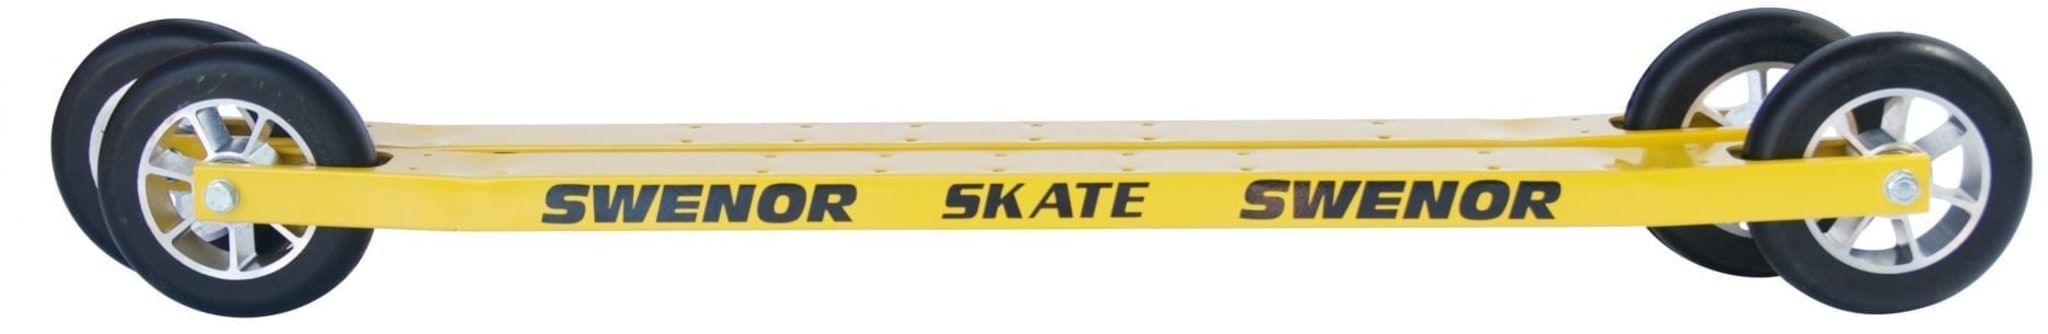 Stødig treningsski for skøyting, en av de mest bruke skiene